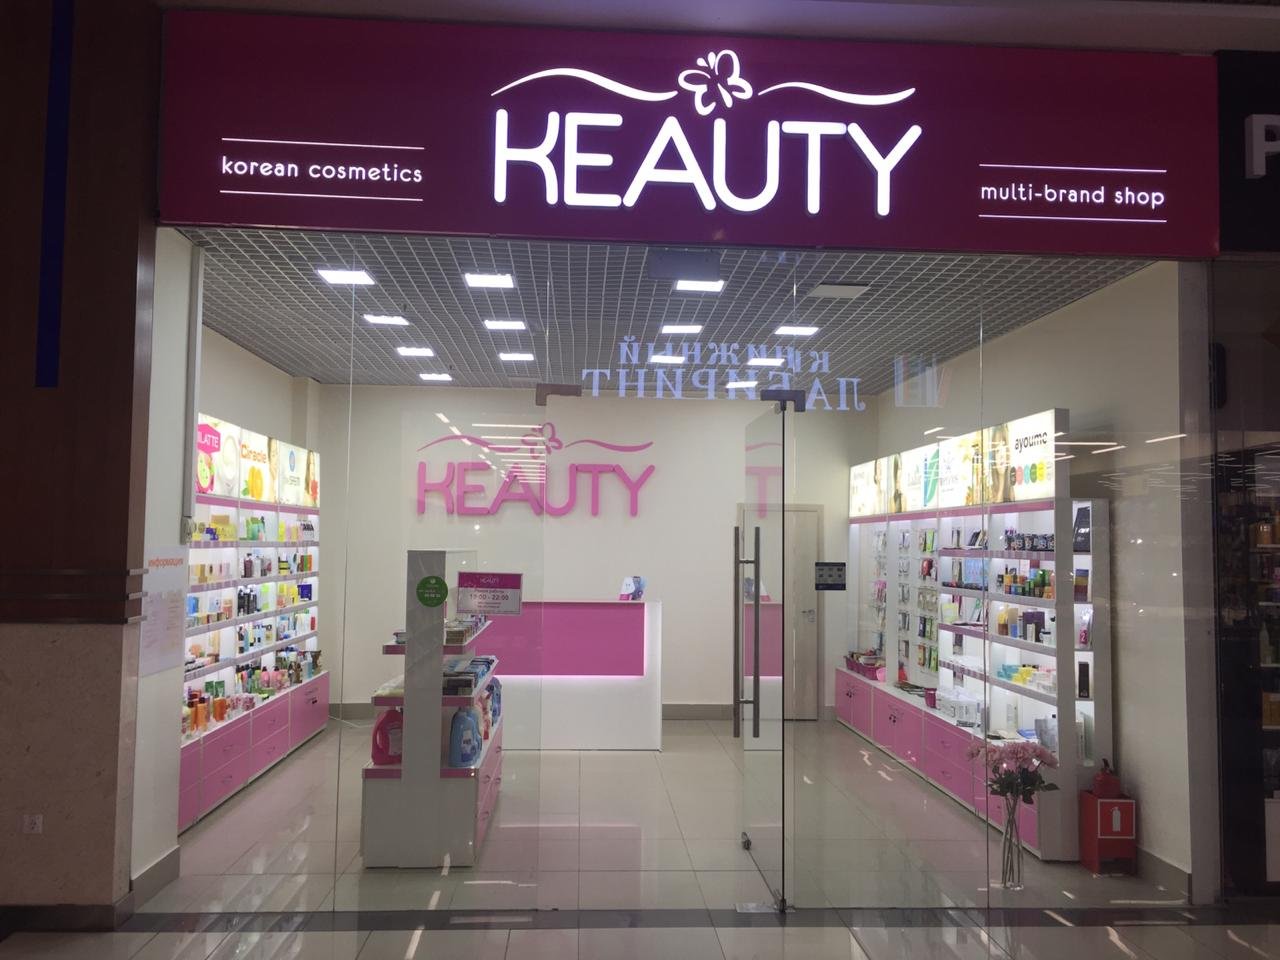 KEAUTY, сеть магазинов корейской косметики, Поляны, 8 (1 этаж)